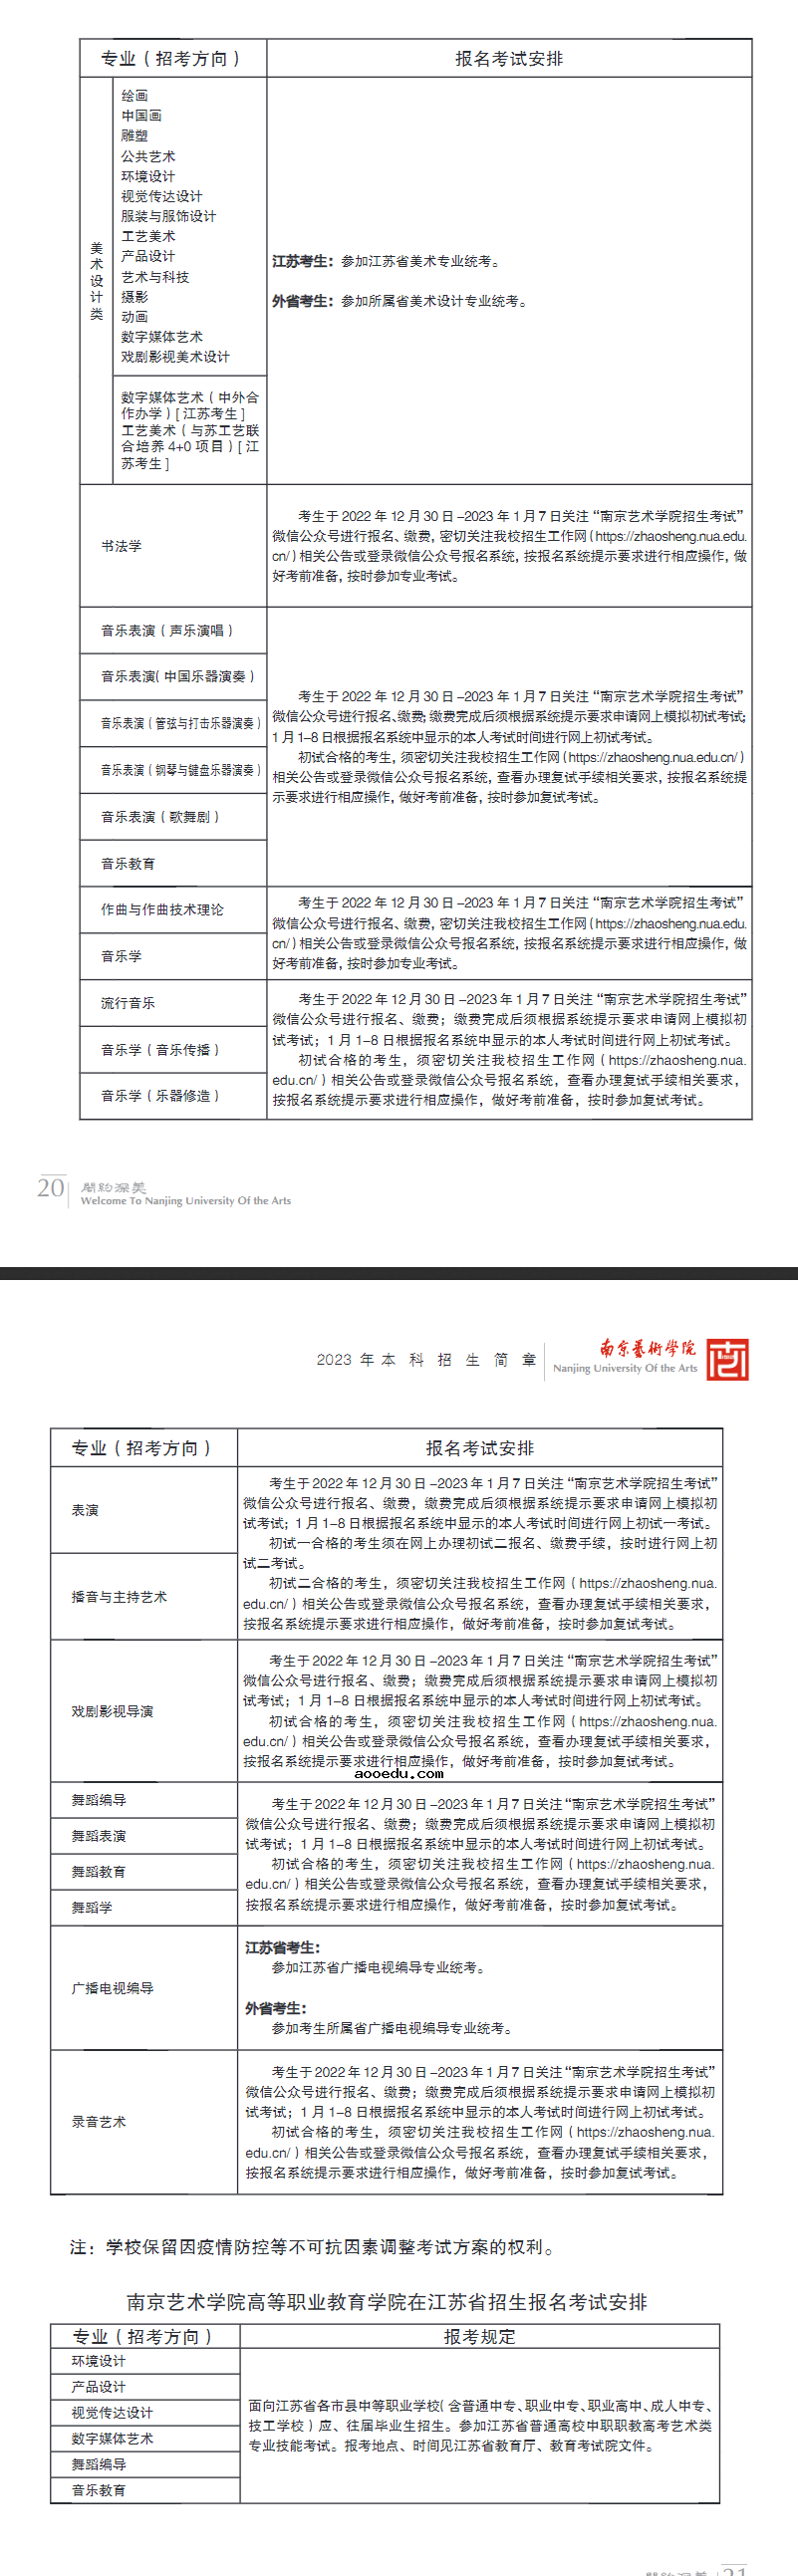 2023南京艺术学院校考时间 具体考试安排